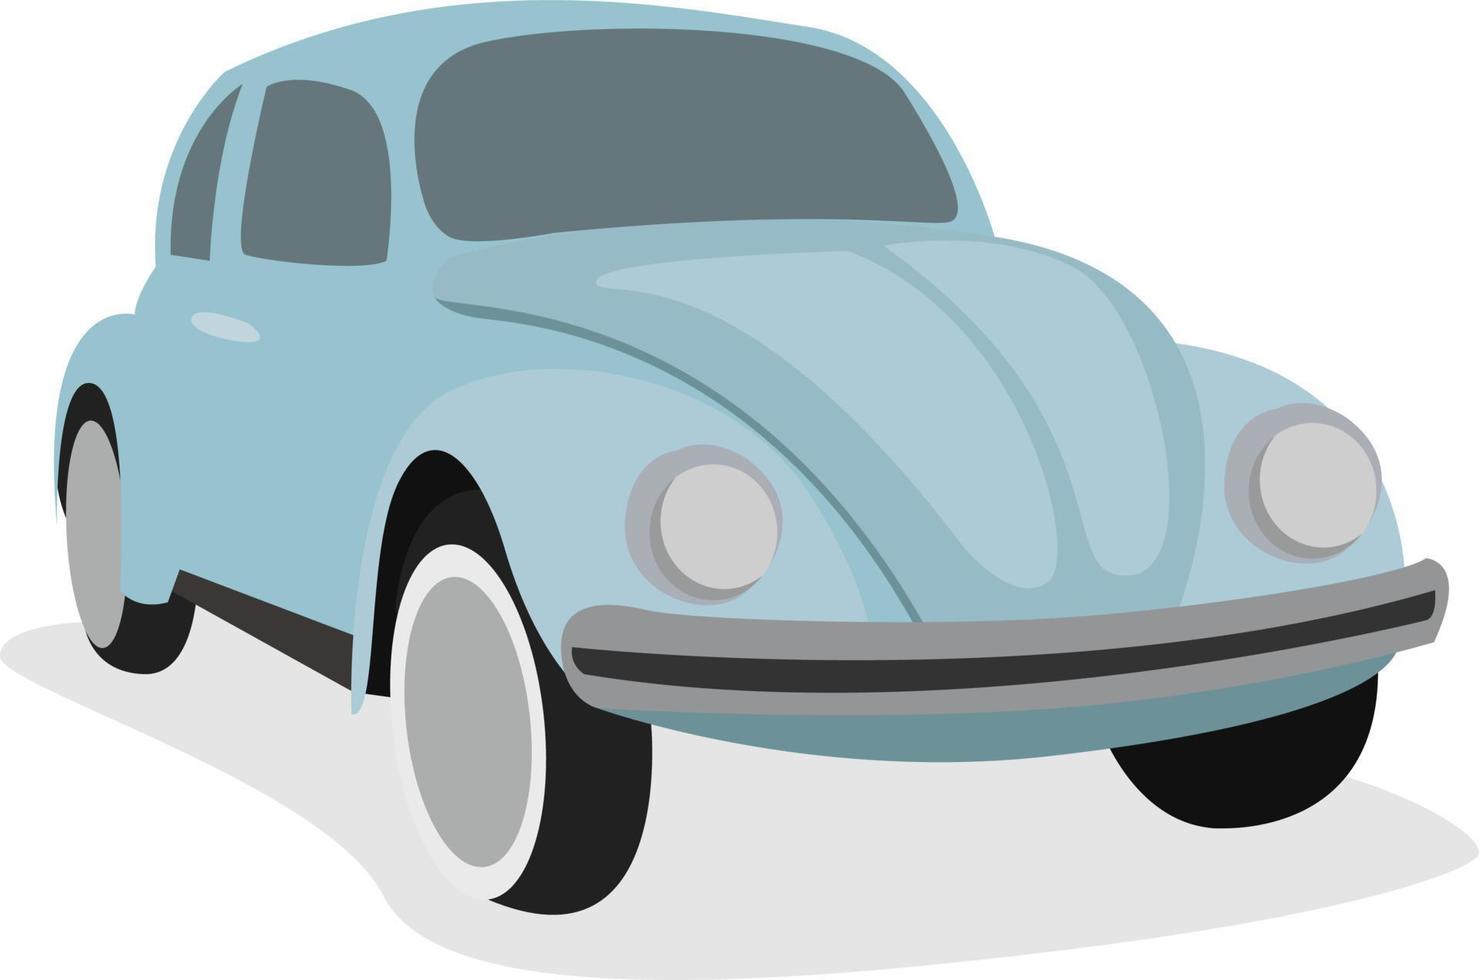 Escarabajo coche, ilustración, vector sobre fondo blanco.